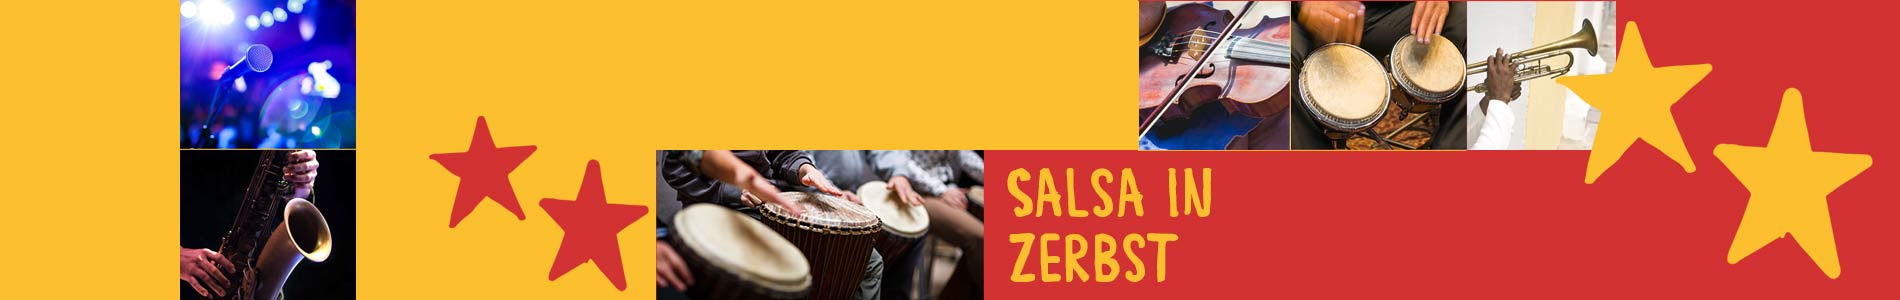 Salsa in Zerbst – Salsa lernen und tanzen, Tanzkurse, Partys, Veranstaltungen